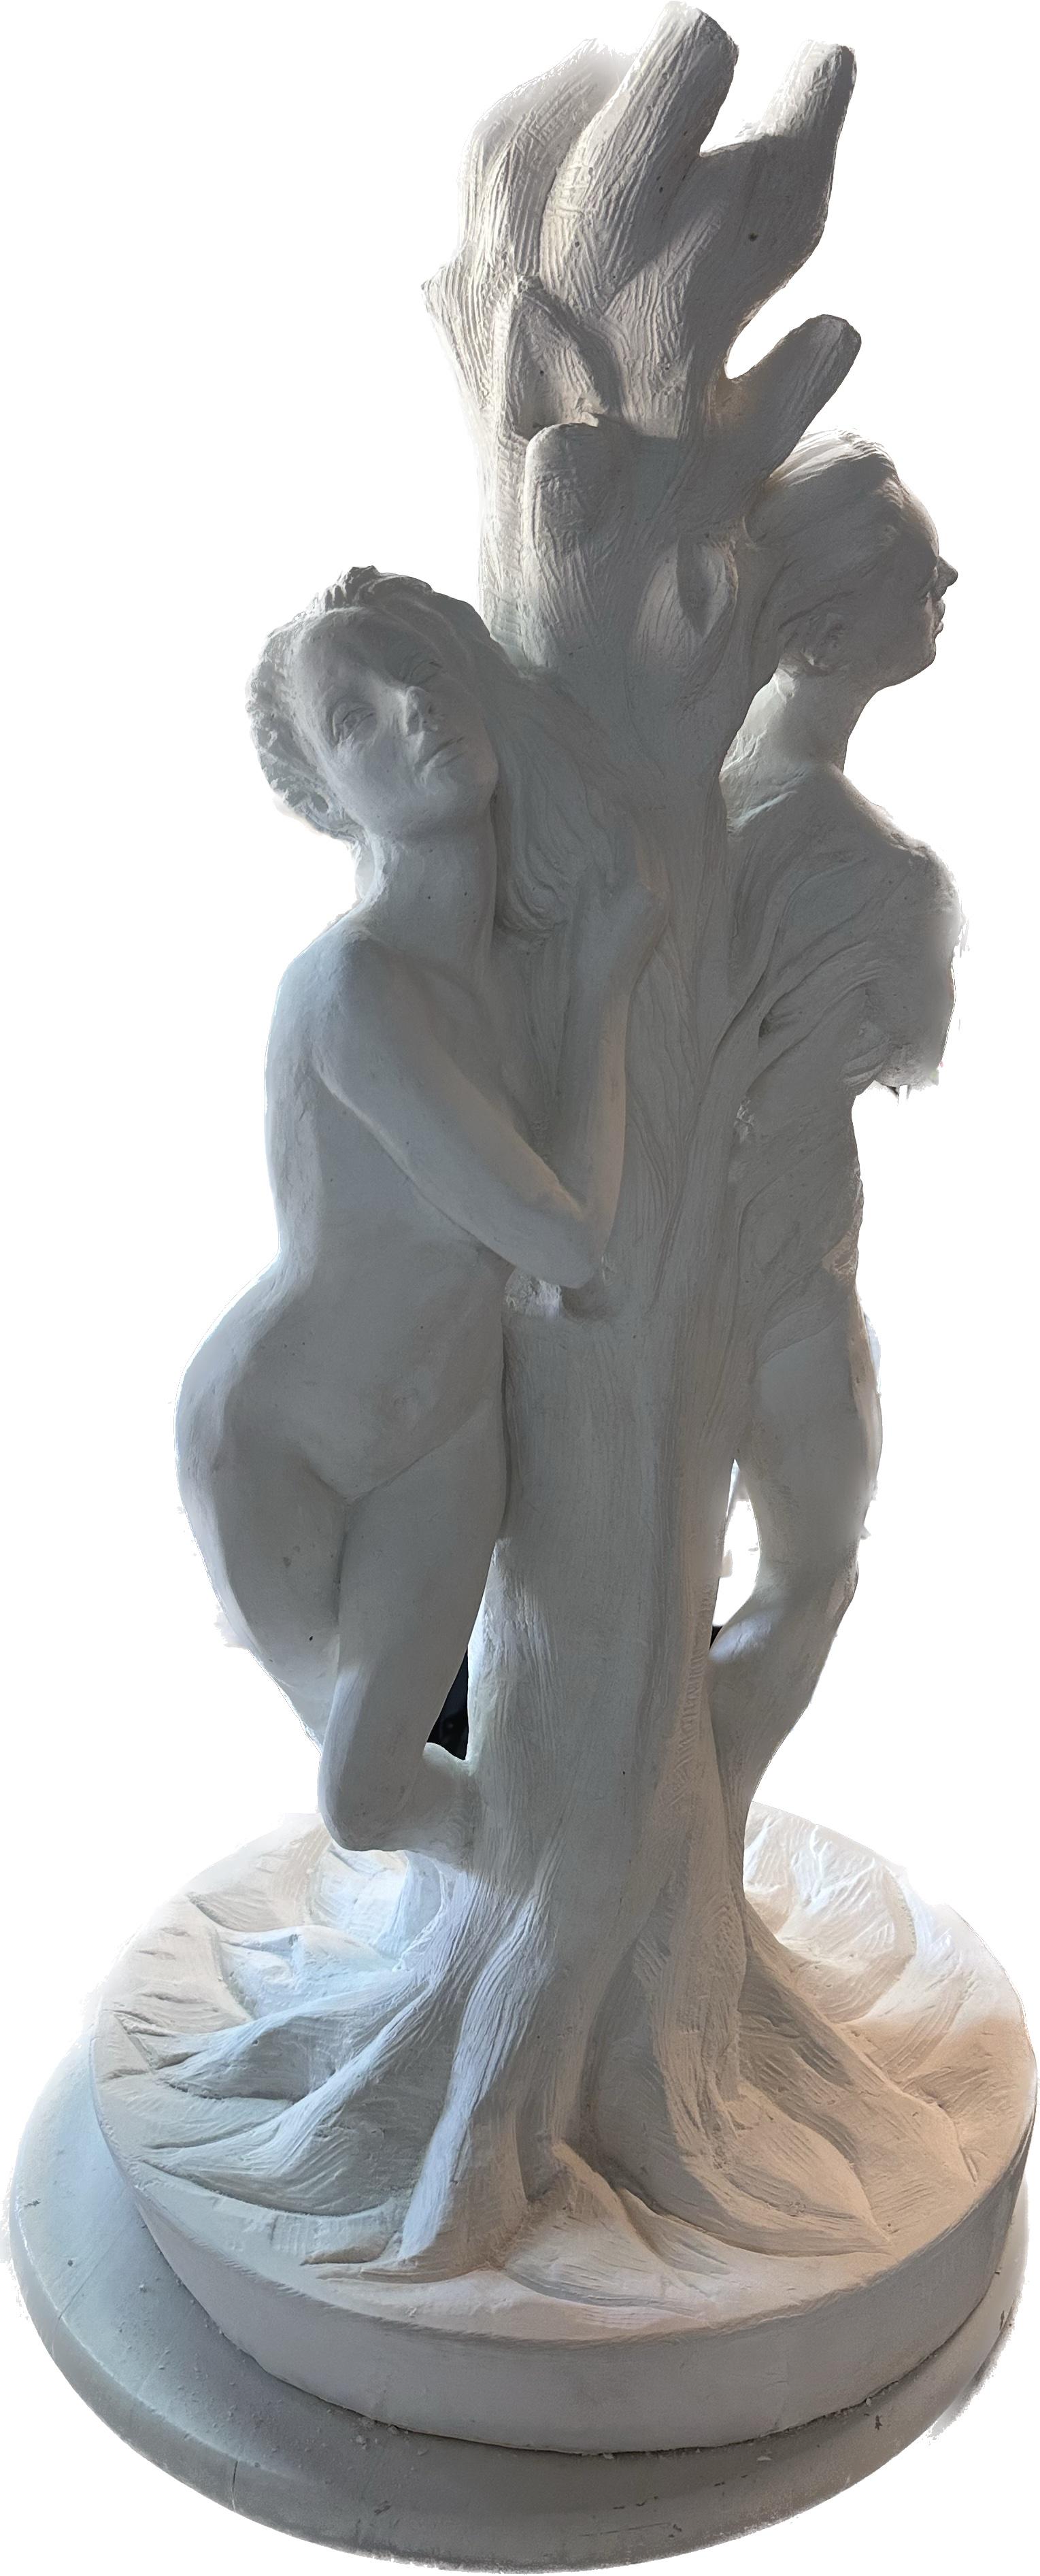 Adam und Eva, Skulptur, Hydro-Stein, handgefertigt von Garo, Unikat, Skulptur (Impressionismus), Sculpture, von Karapet Balakeseryan  (Garo)